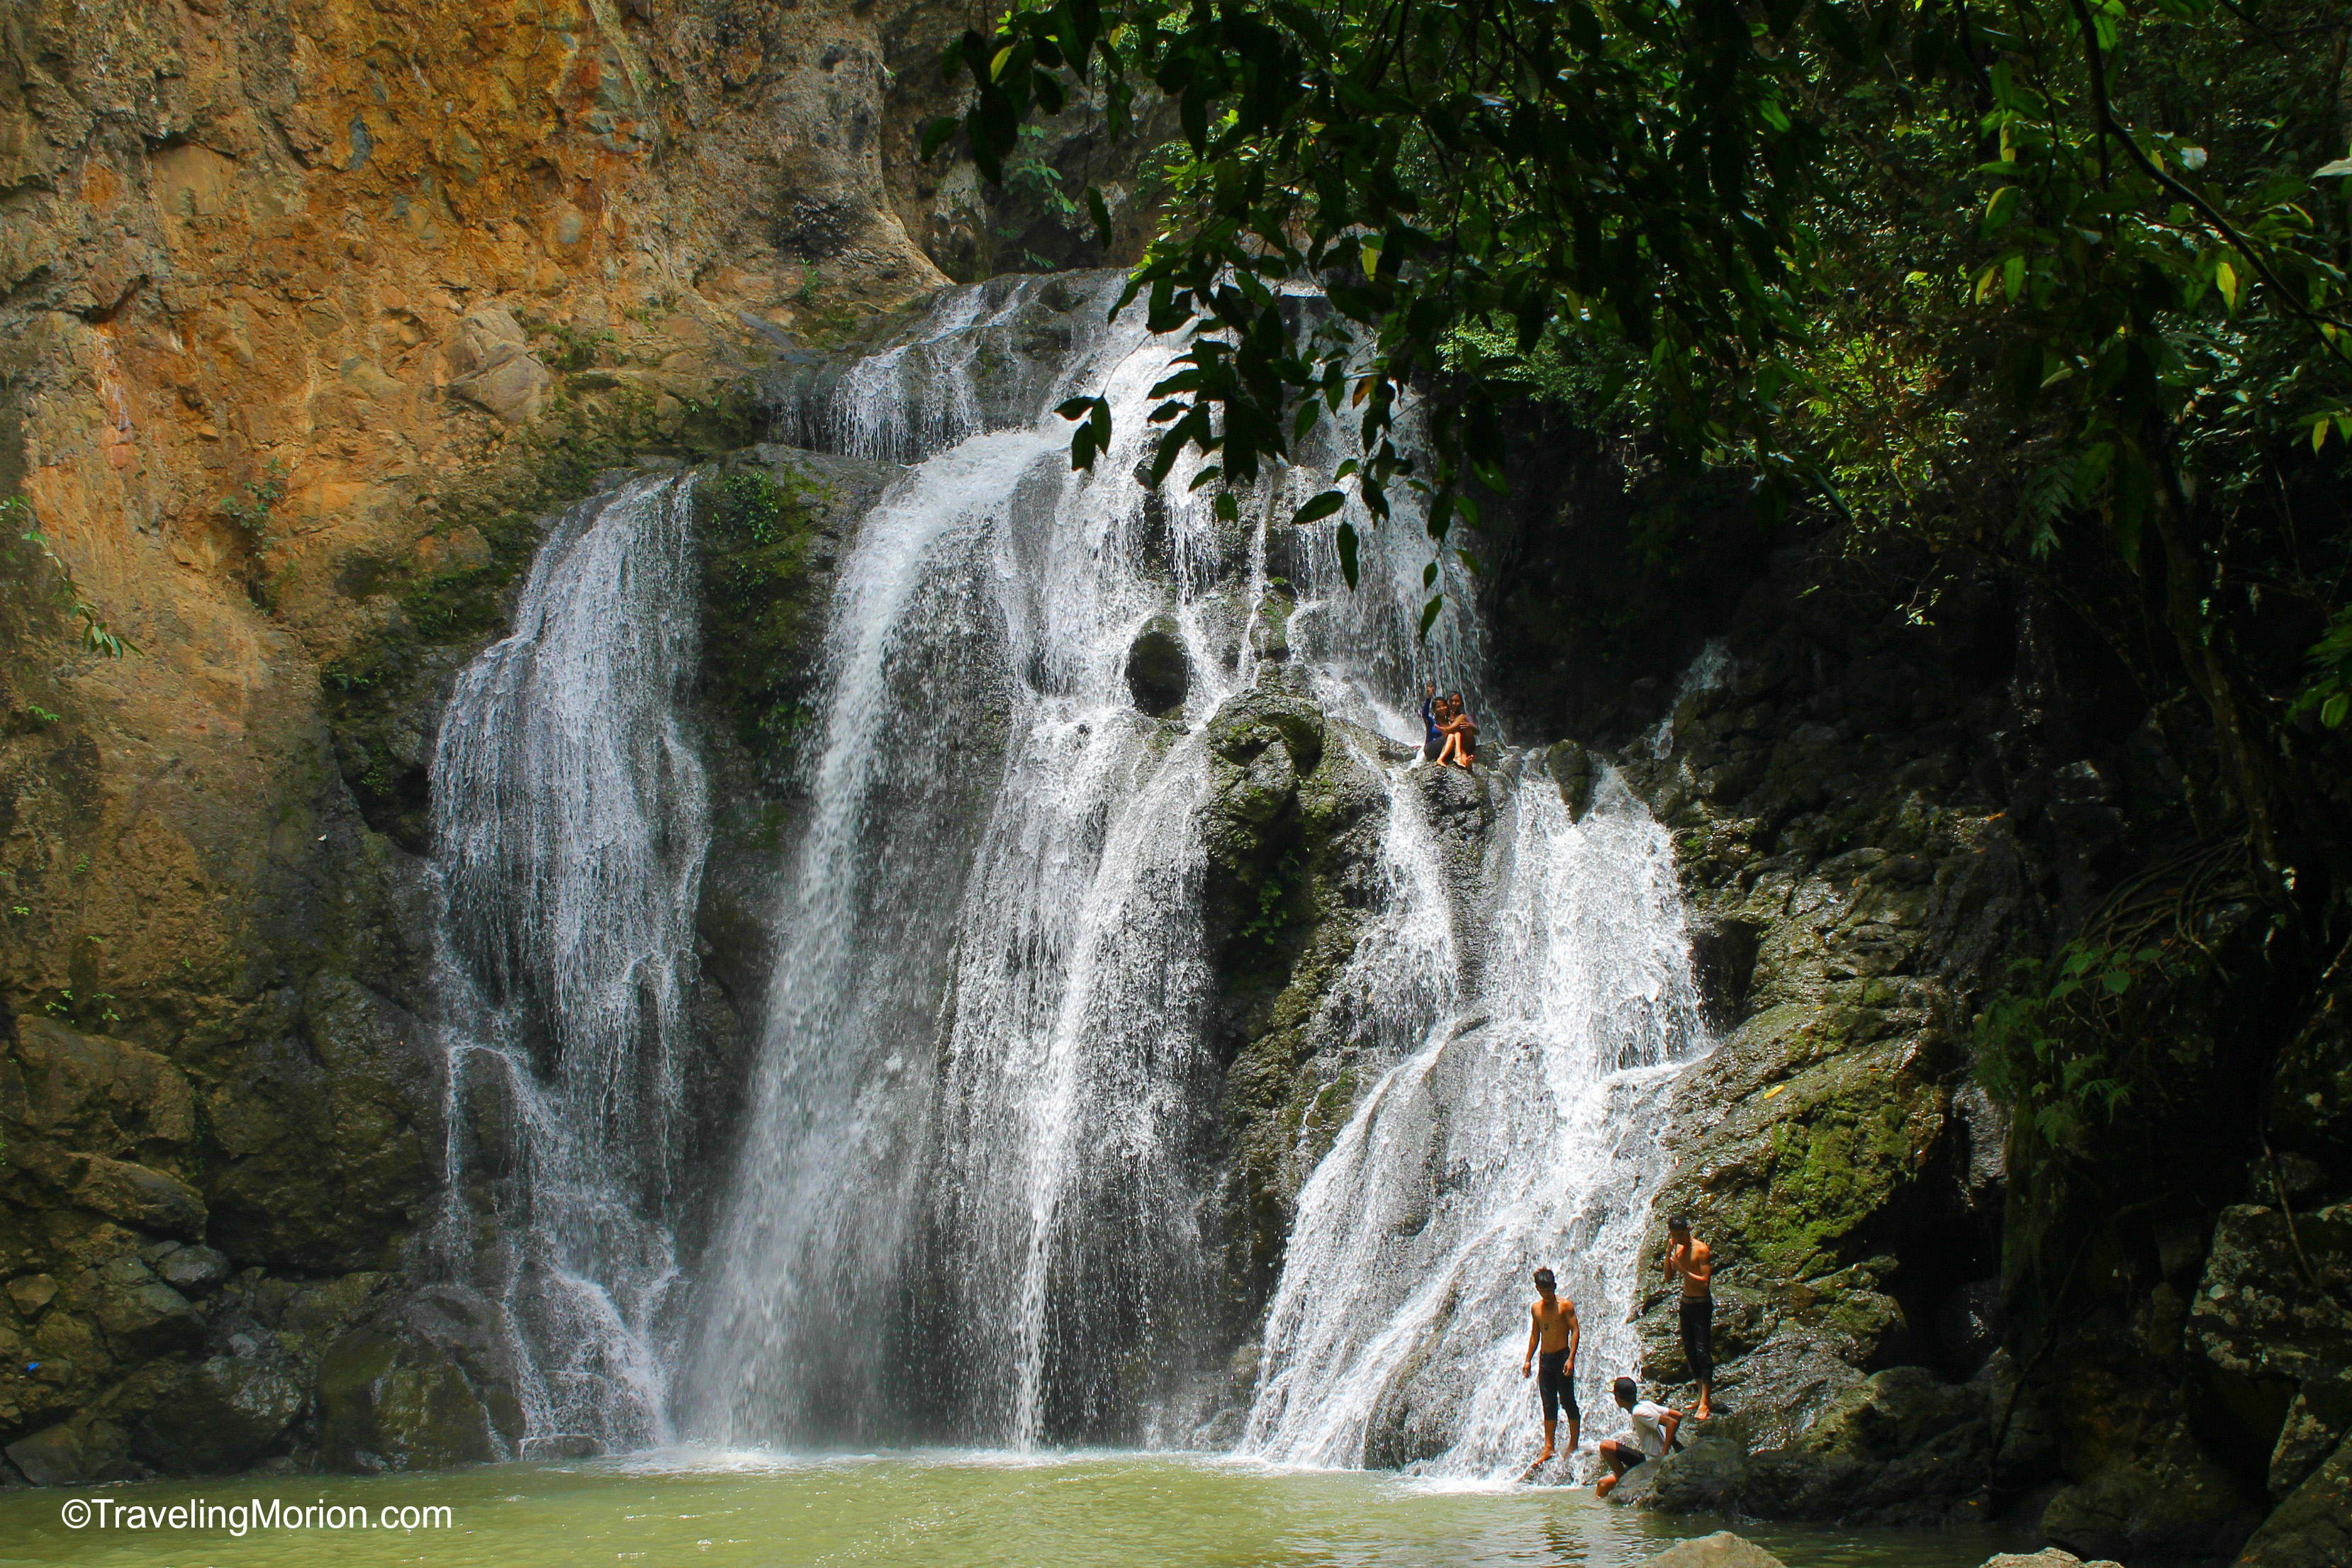 Kawasan Falls in Trinidad, Bohol